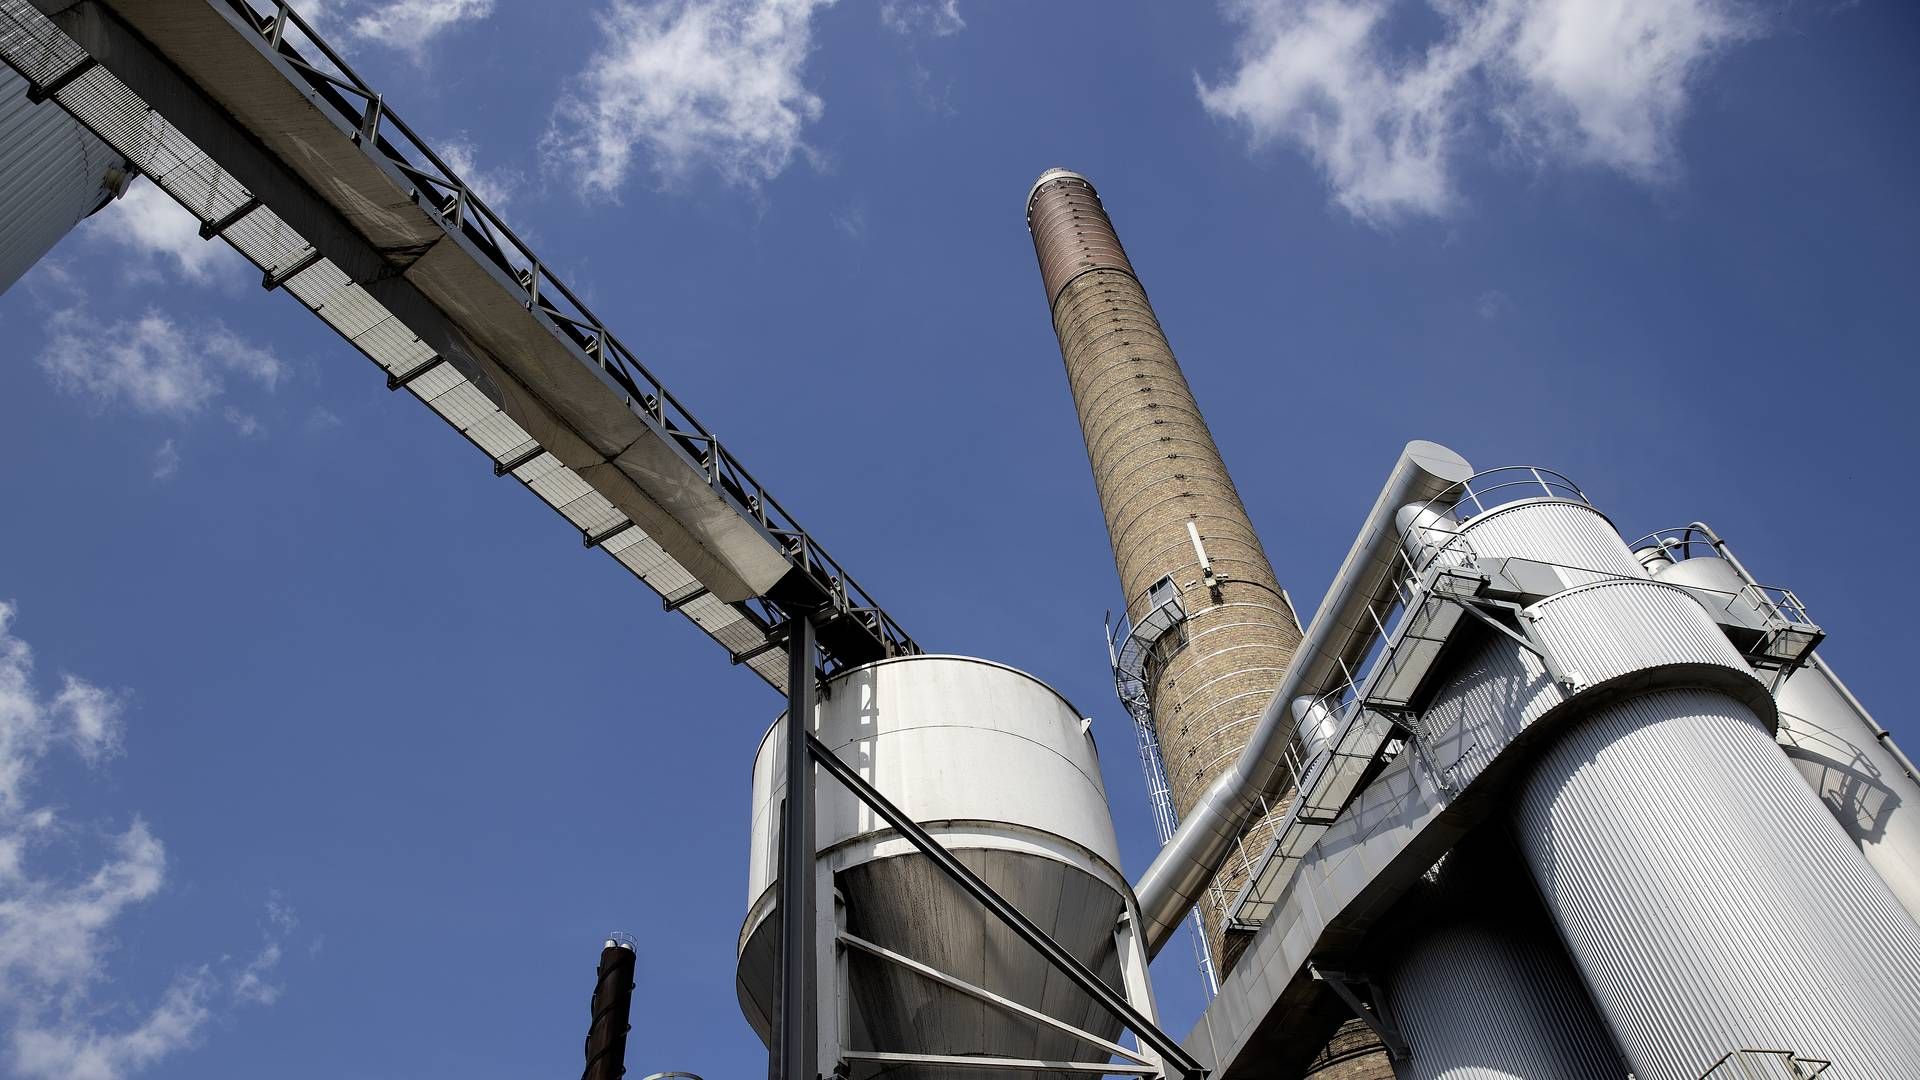 Nordic Sugar har fået tilsagn om at der laves en gasledning til koncernens fabrikker på Lolland og Falster. Beslutningen har dog fået hård kritik. | Foto: Peter Hove Olesen